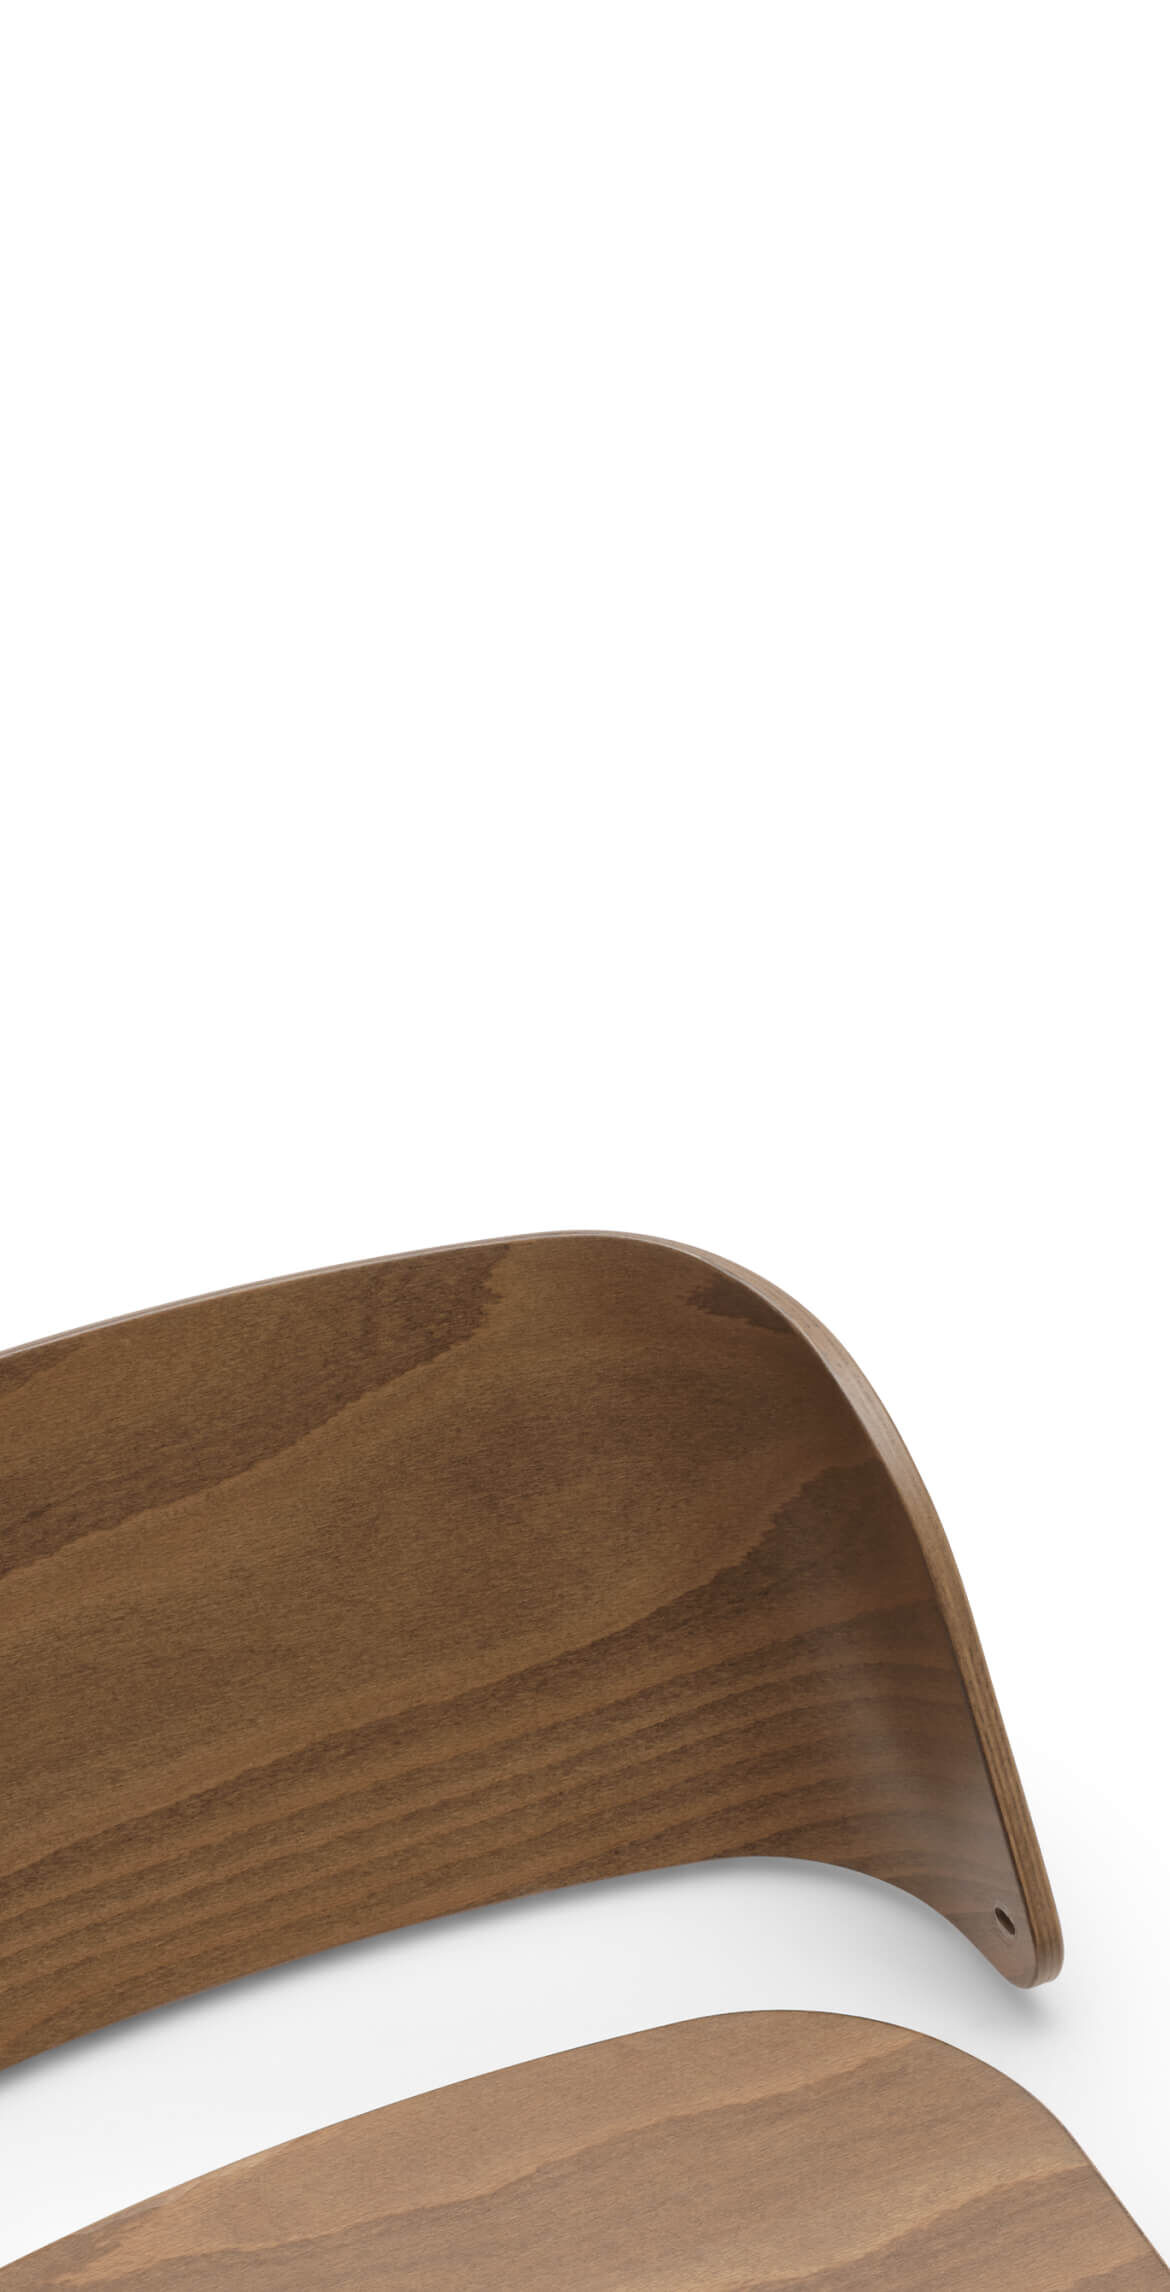 Le dossier et le siège amovible de la chaise haute Bugaboo Giraffe, fabriqués en bois naturel avec un fini poli de qualité.